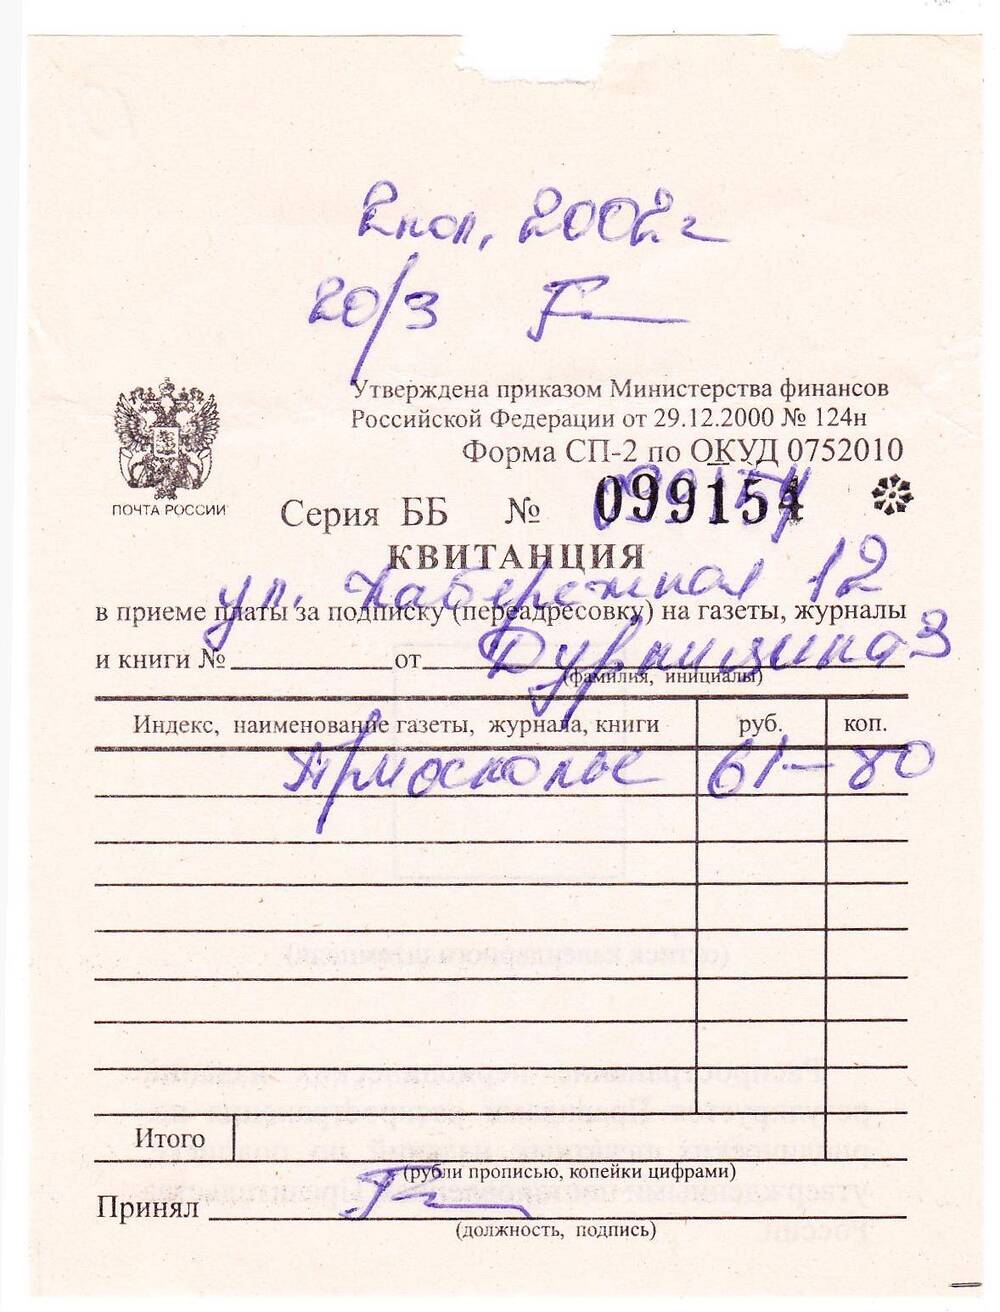 Документ. Квитанция в приеме подписки от Дурнициной З.Д., на издание «Приосколье».